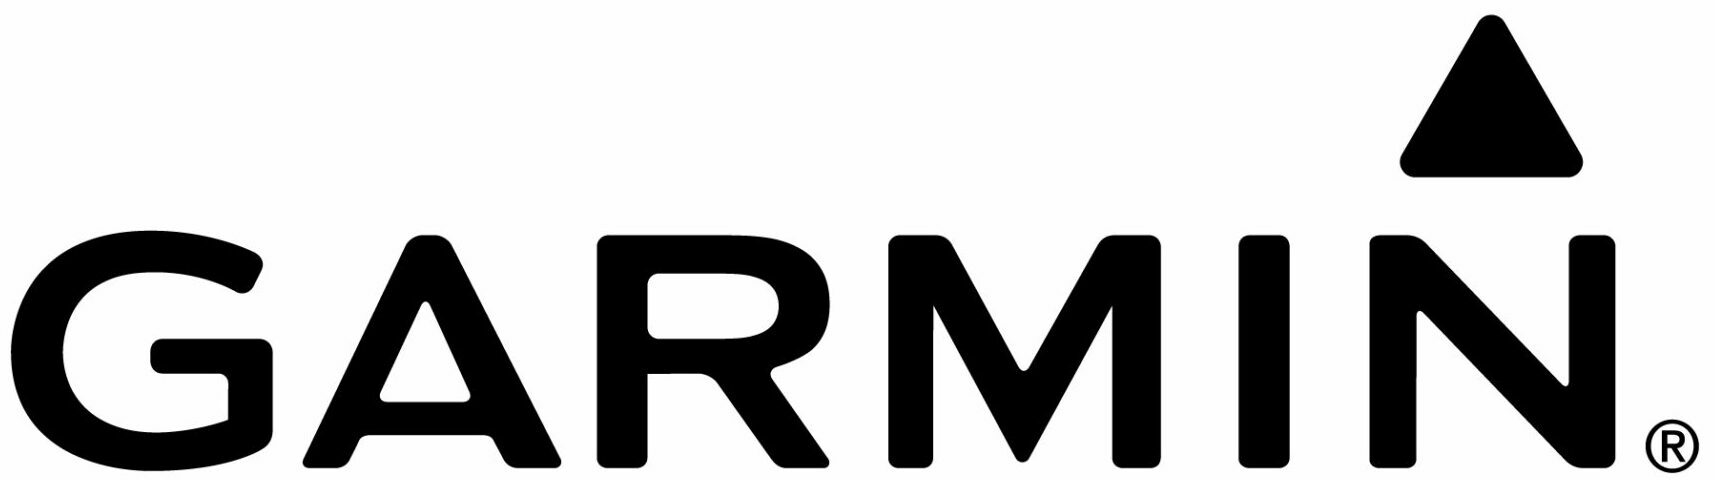 Garmin_Logo_With_Delta-black-high-res